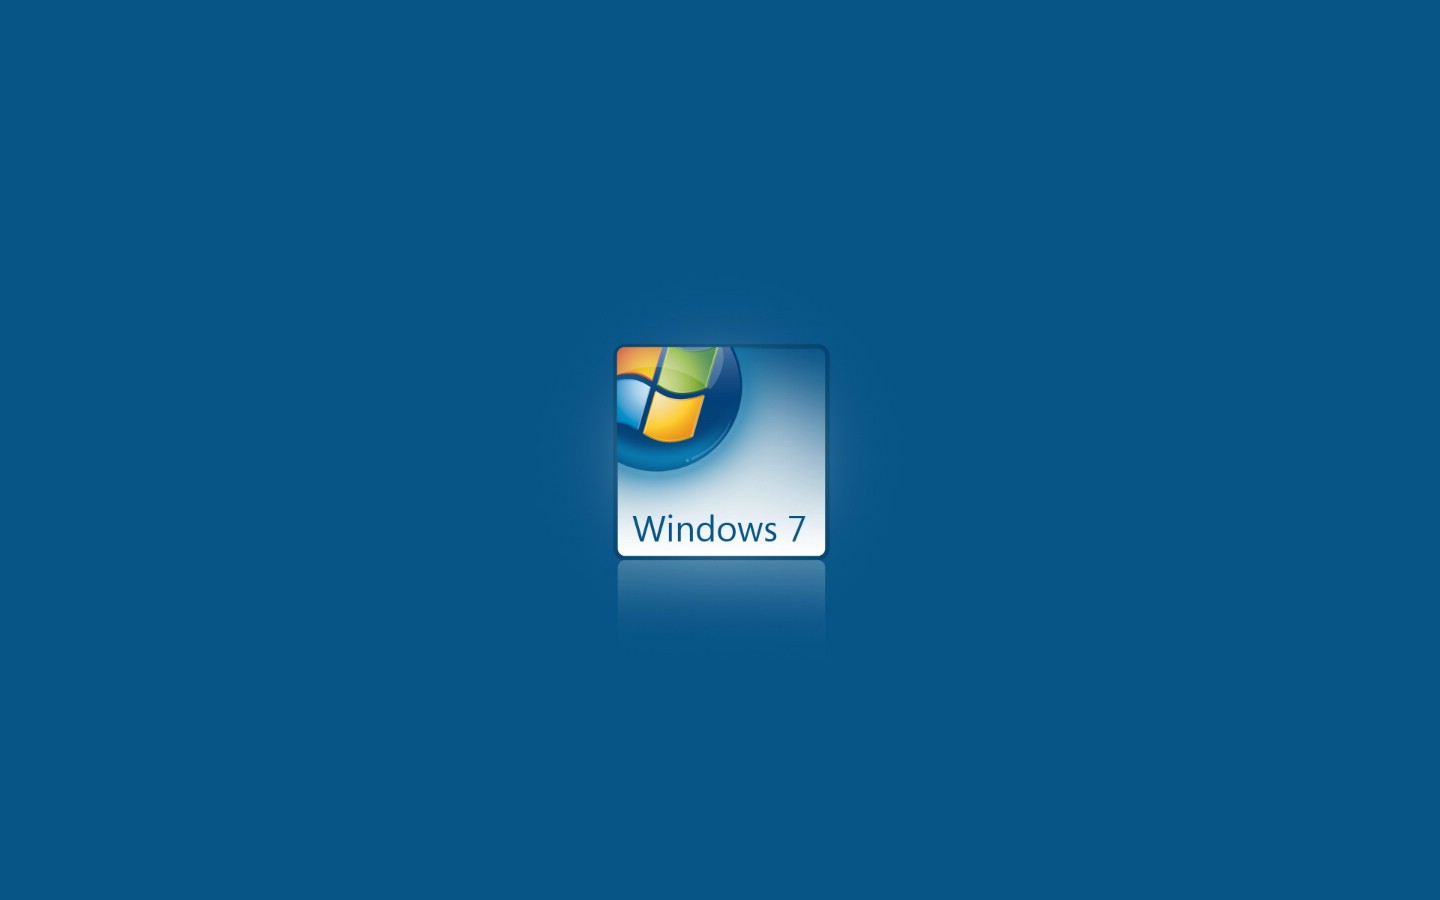 壁纸1440x900Windows7 1 18壁纸 Vista Windows7 第一辑壁纸 Vista Windows7 第一辑图片 Vista Windows7 第一辑素材 系统壁纸 系统图库 系统图片素材桌面壁纸